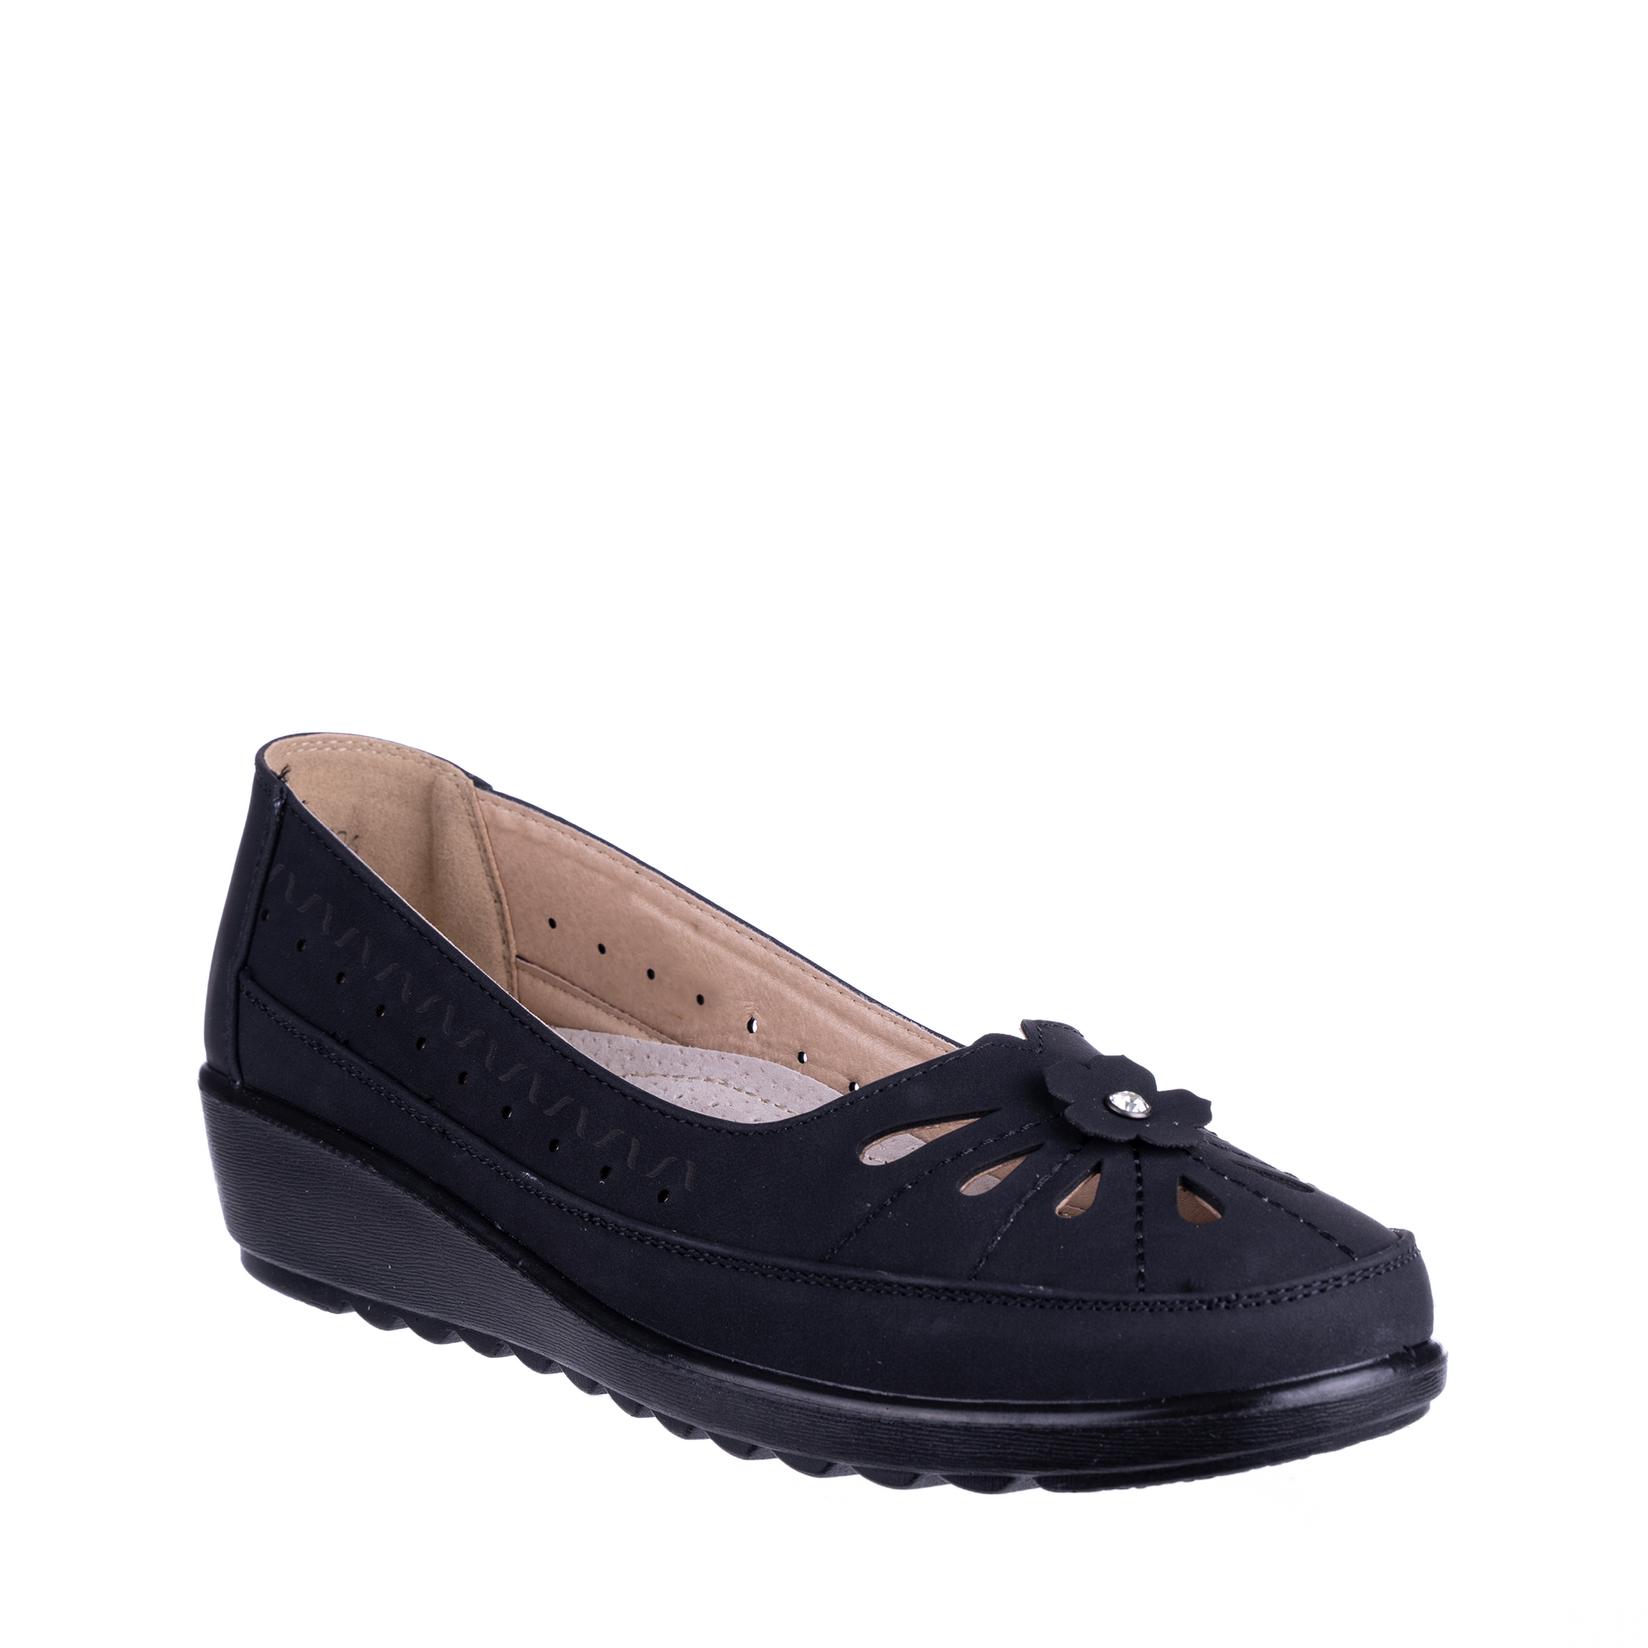 COMFORT BY ELLY SHOES Ženske cipele N76210, Crne